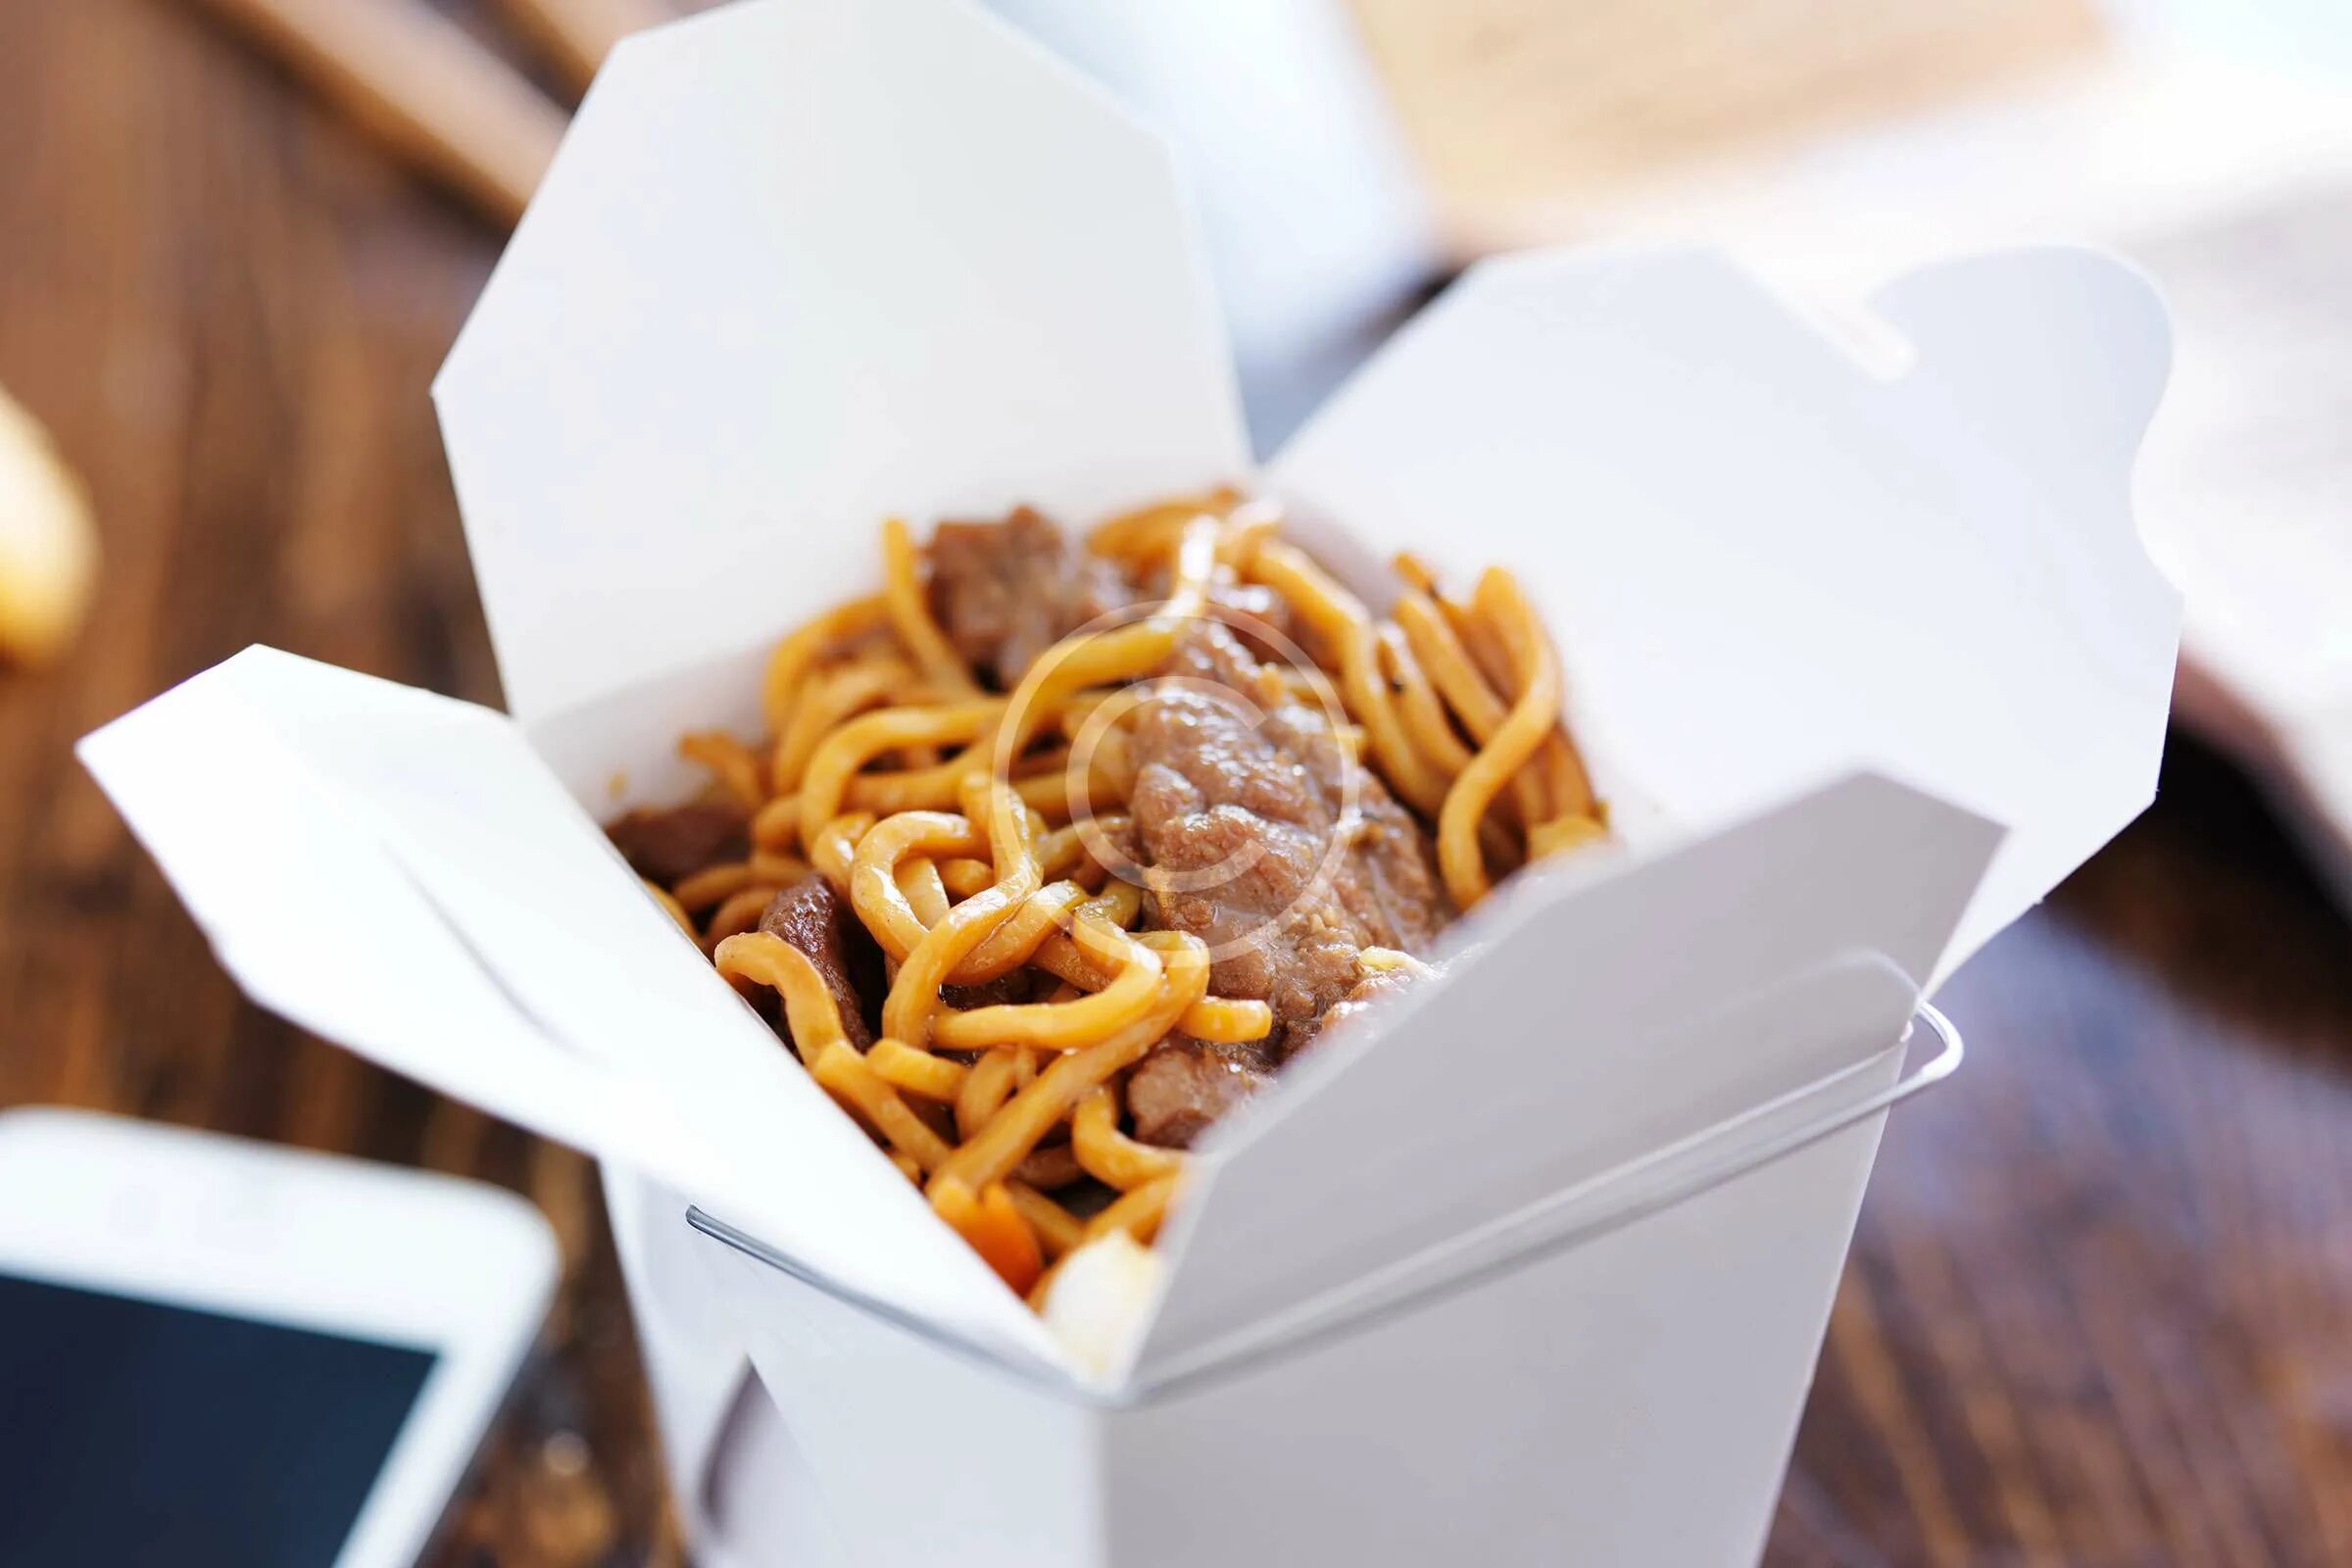 Вок лапша в коробке. Китайская еда в коробочках. Реклама китайской лапши. Лапша вок реклама. Реклама лапши